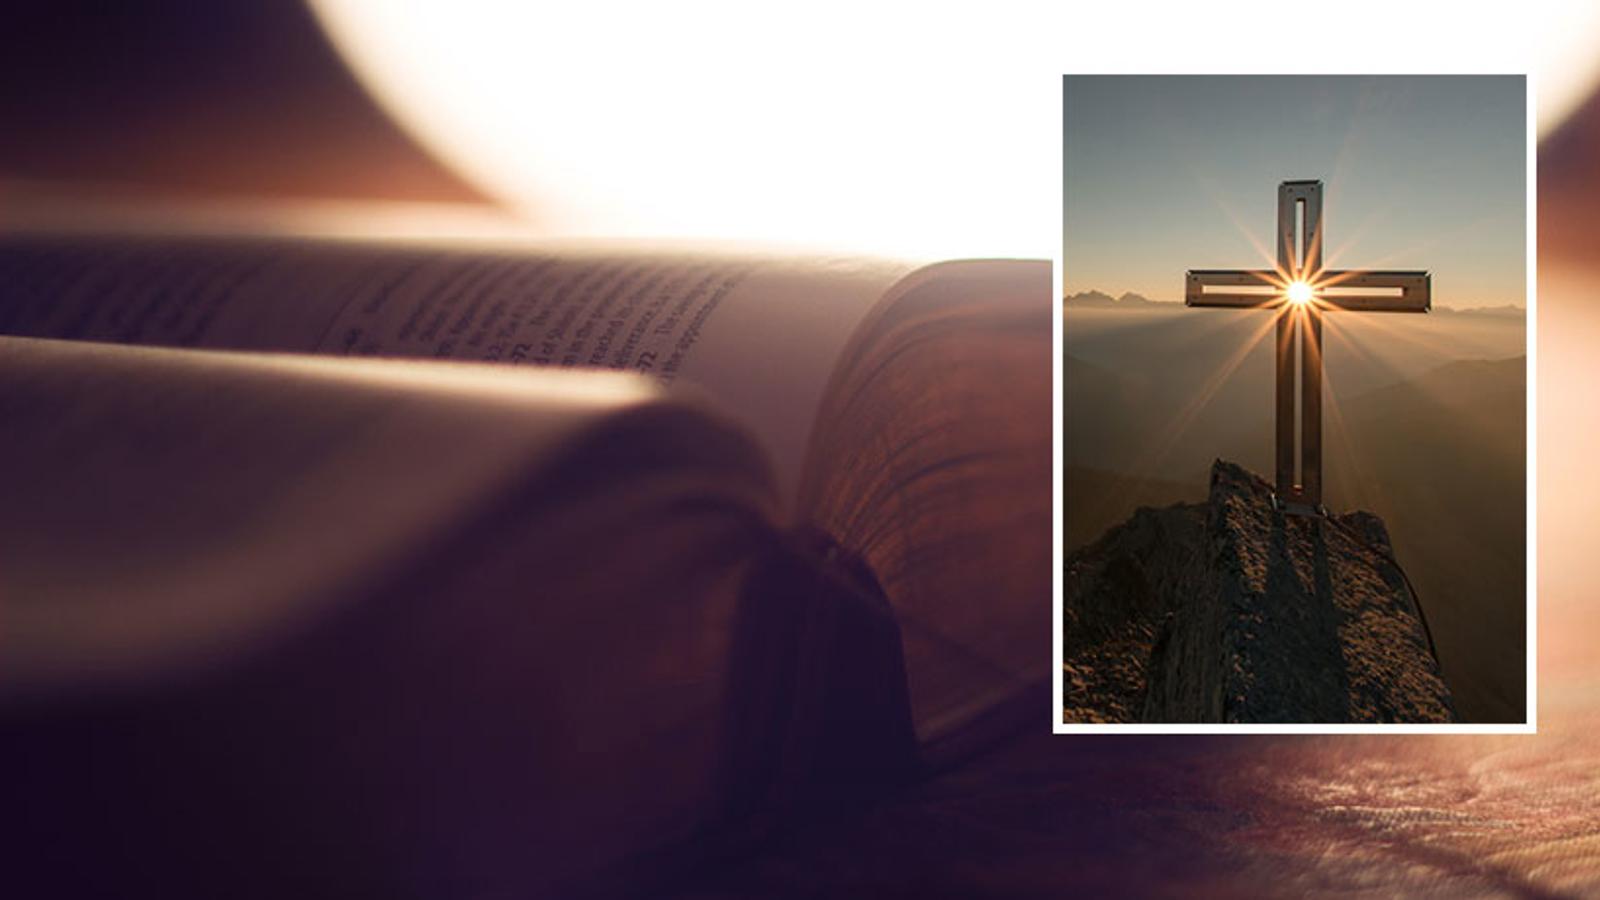 Till vänster: En uppslagen bibel. Till höger: Ett ihåligt kors på ett berg. Genom korset lyser solen.